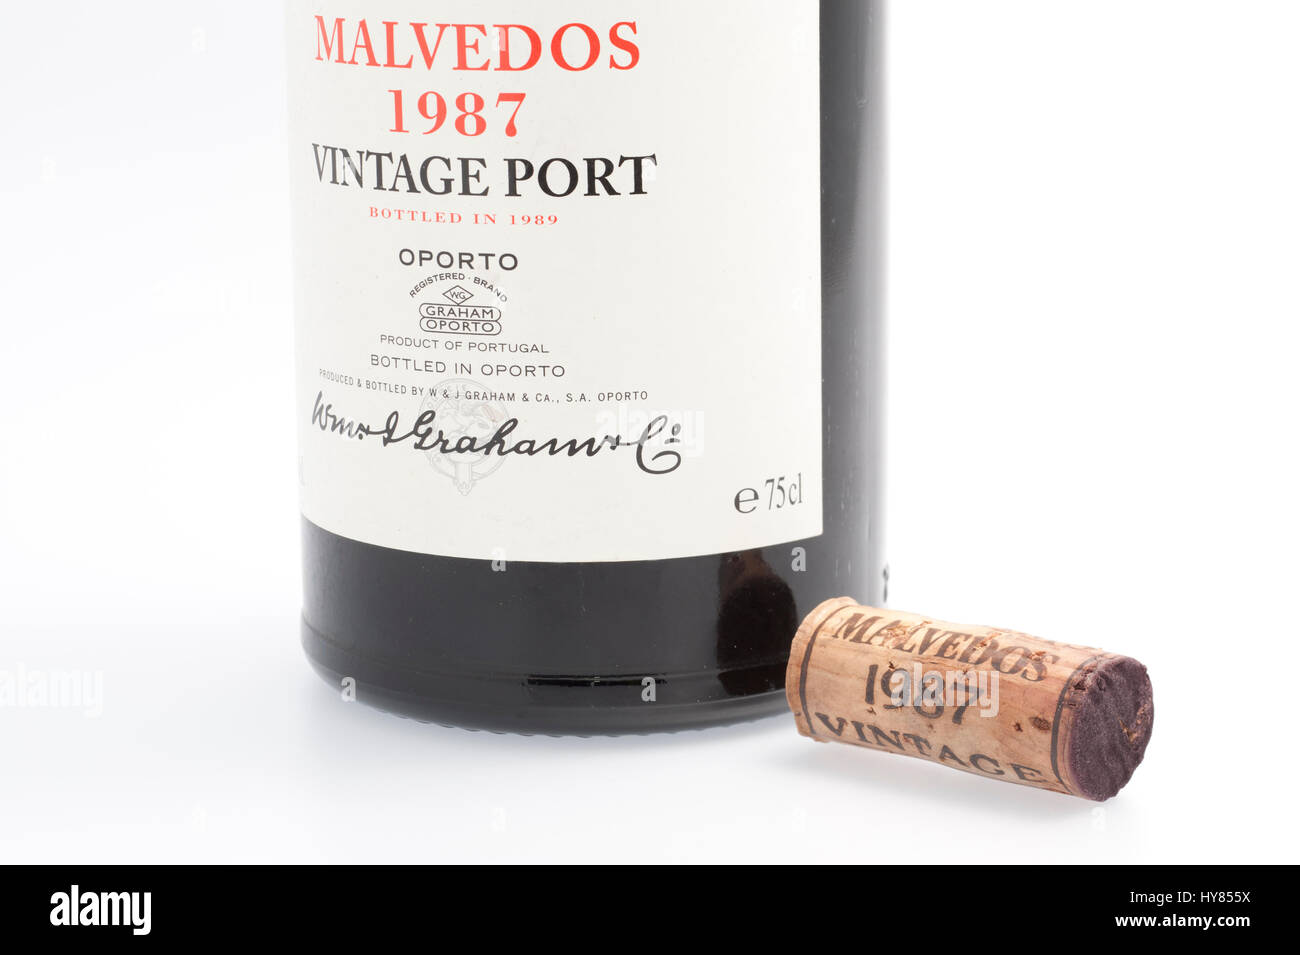 Bouchon à vin et une bouteille de Malvedos vintage port 1987 de Graham's Banque D'Images